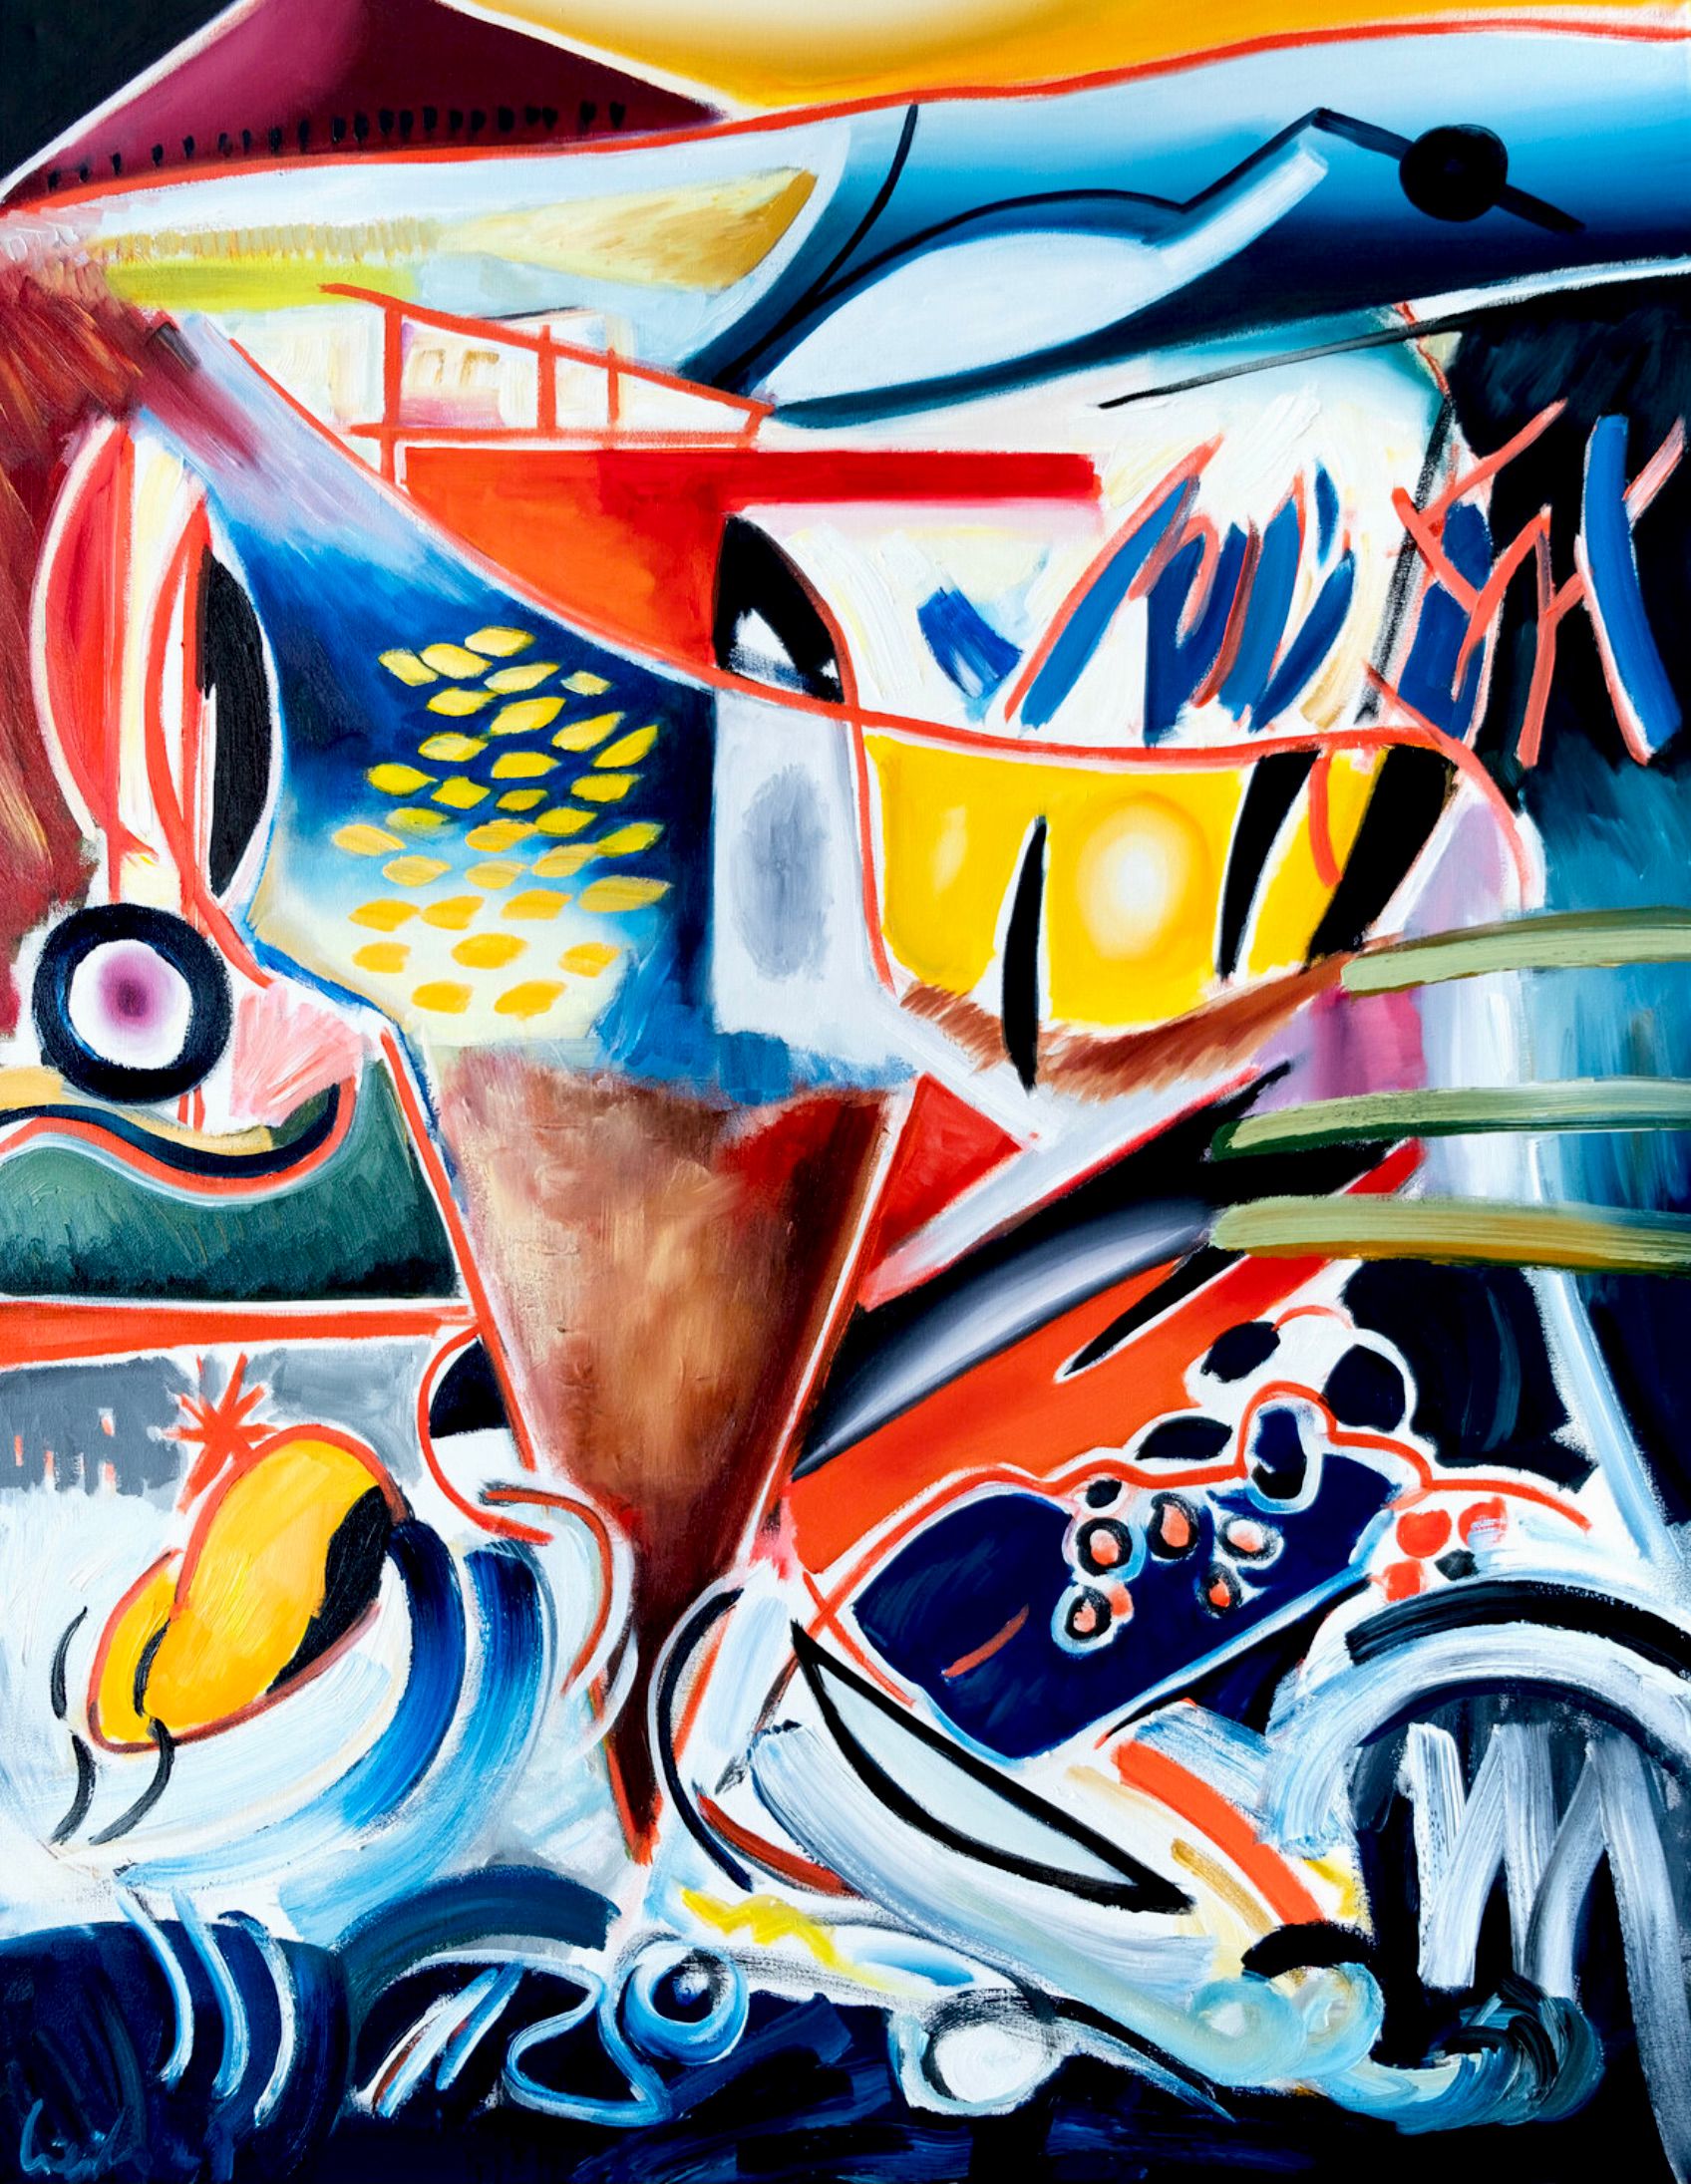 MECESLA Maciej Cieśla, "Punter Ala Italy in abstract forms", Peinture abstraite colorée sur toile